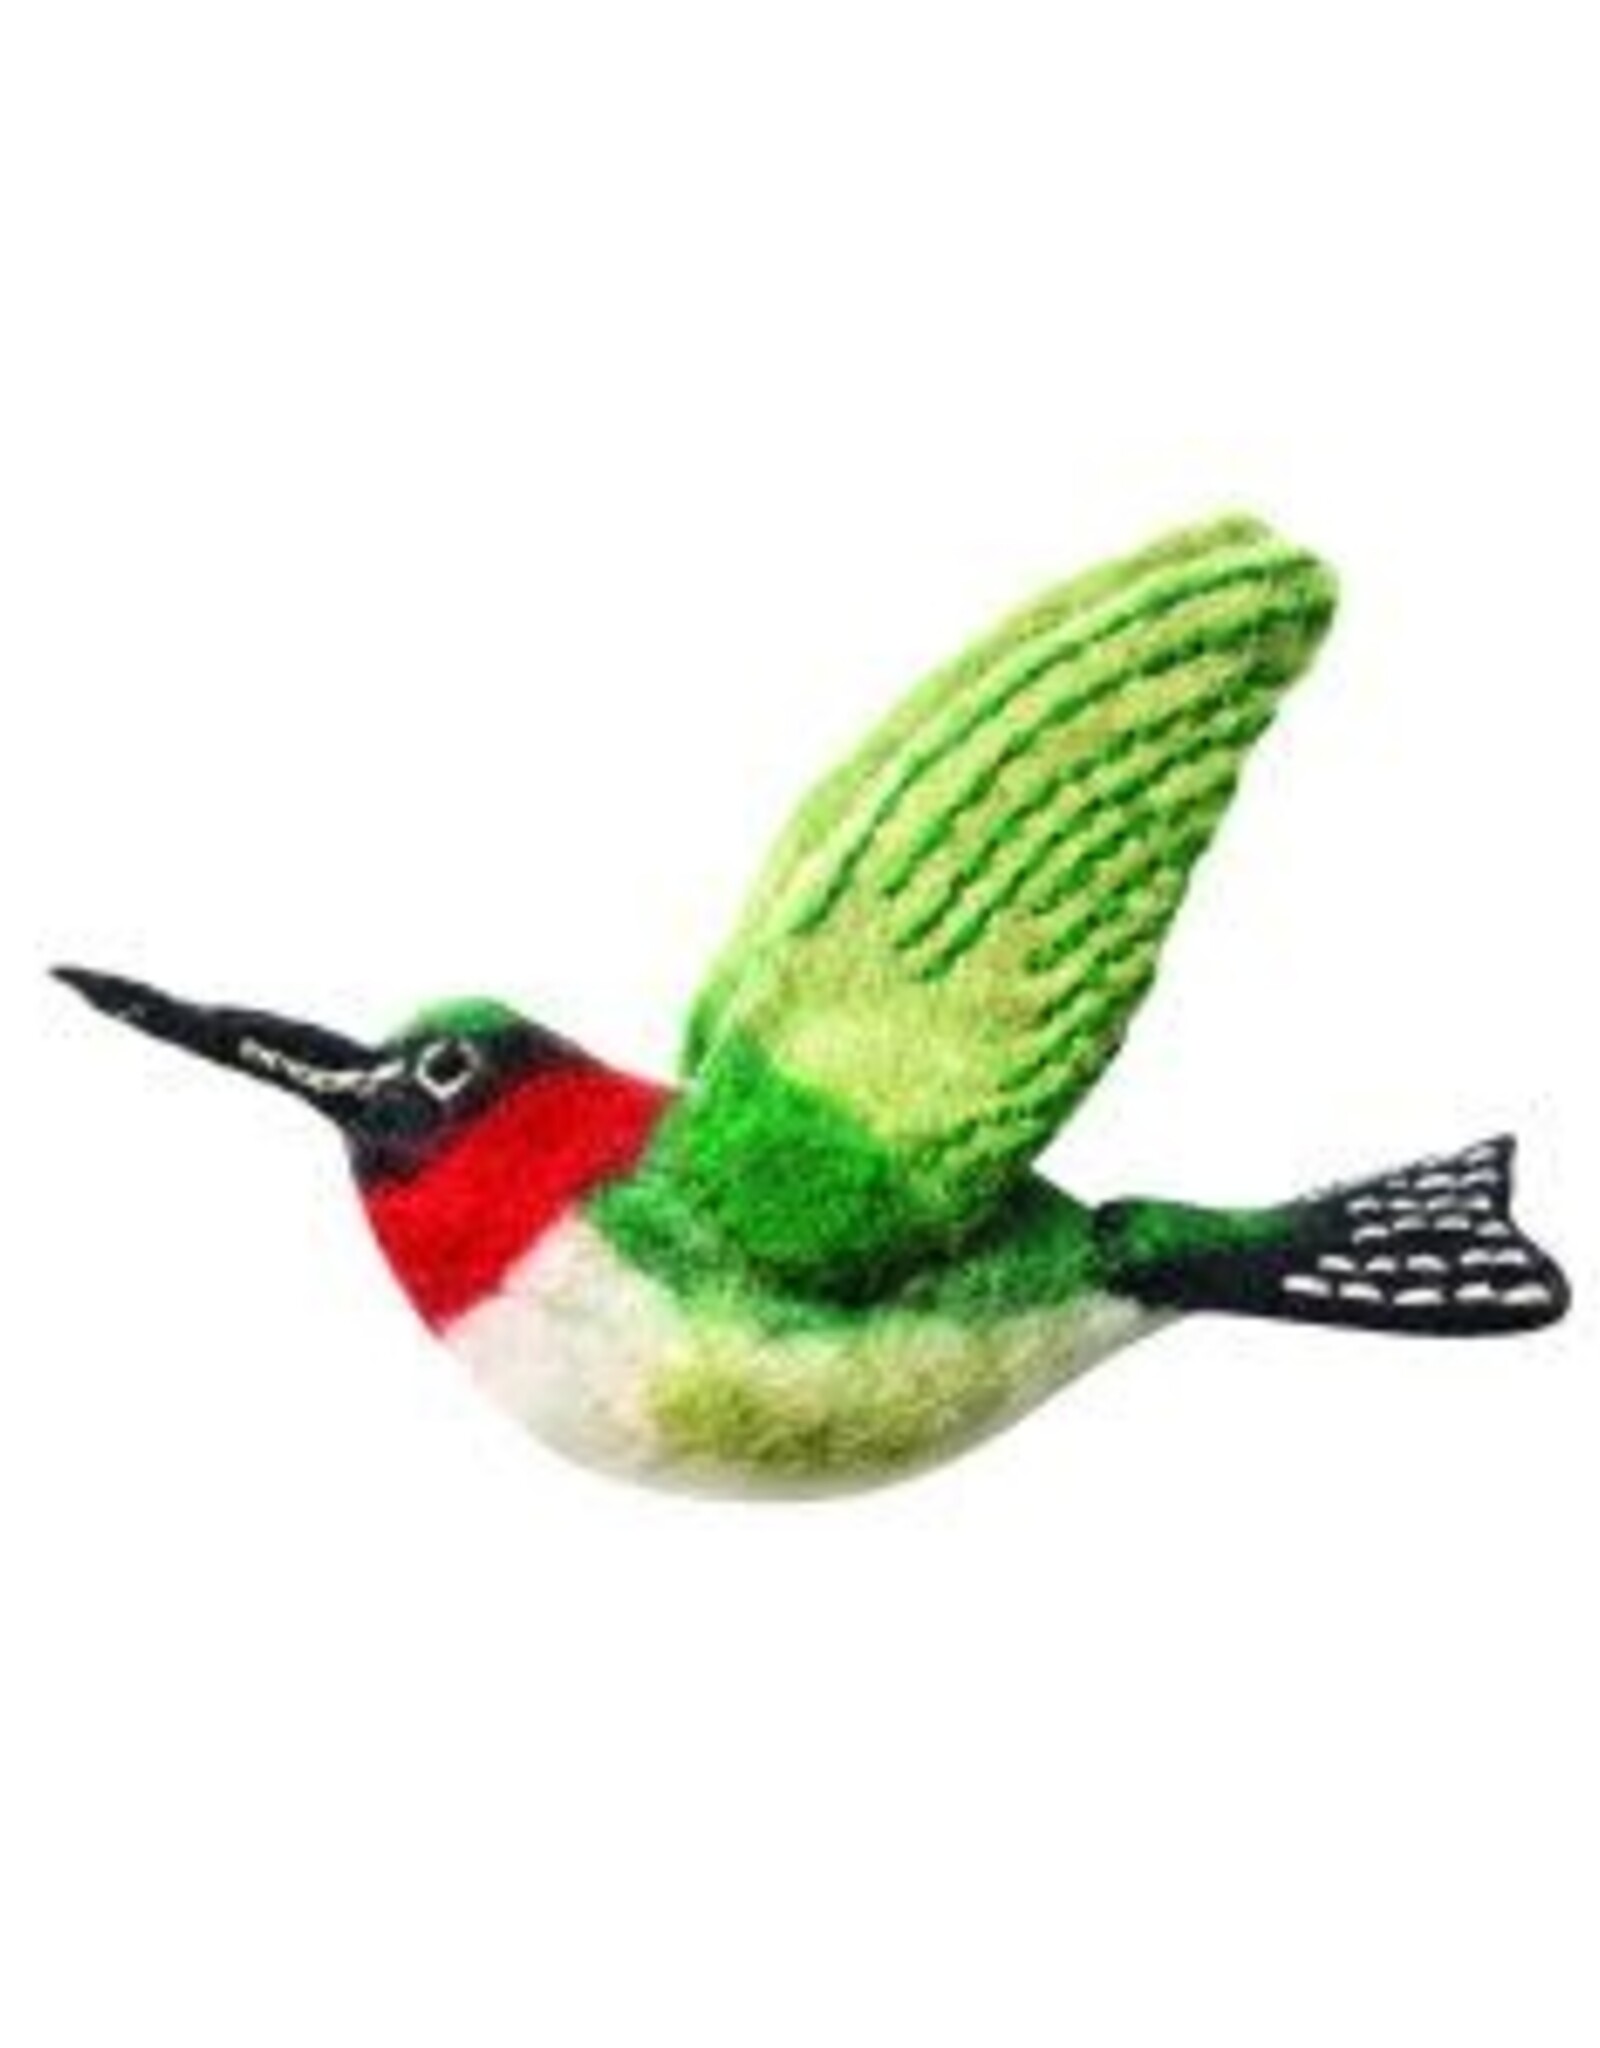 dZi Handmade Wild Woolie Ruby-Throated Hummingbird Ornament